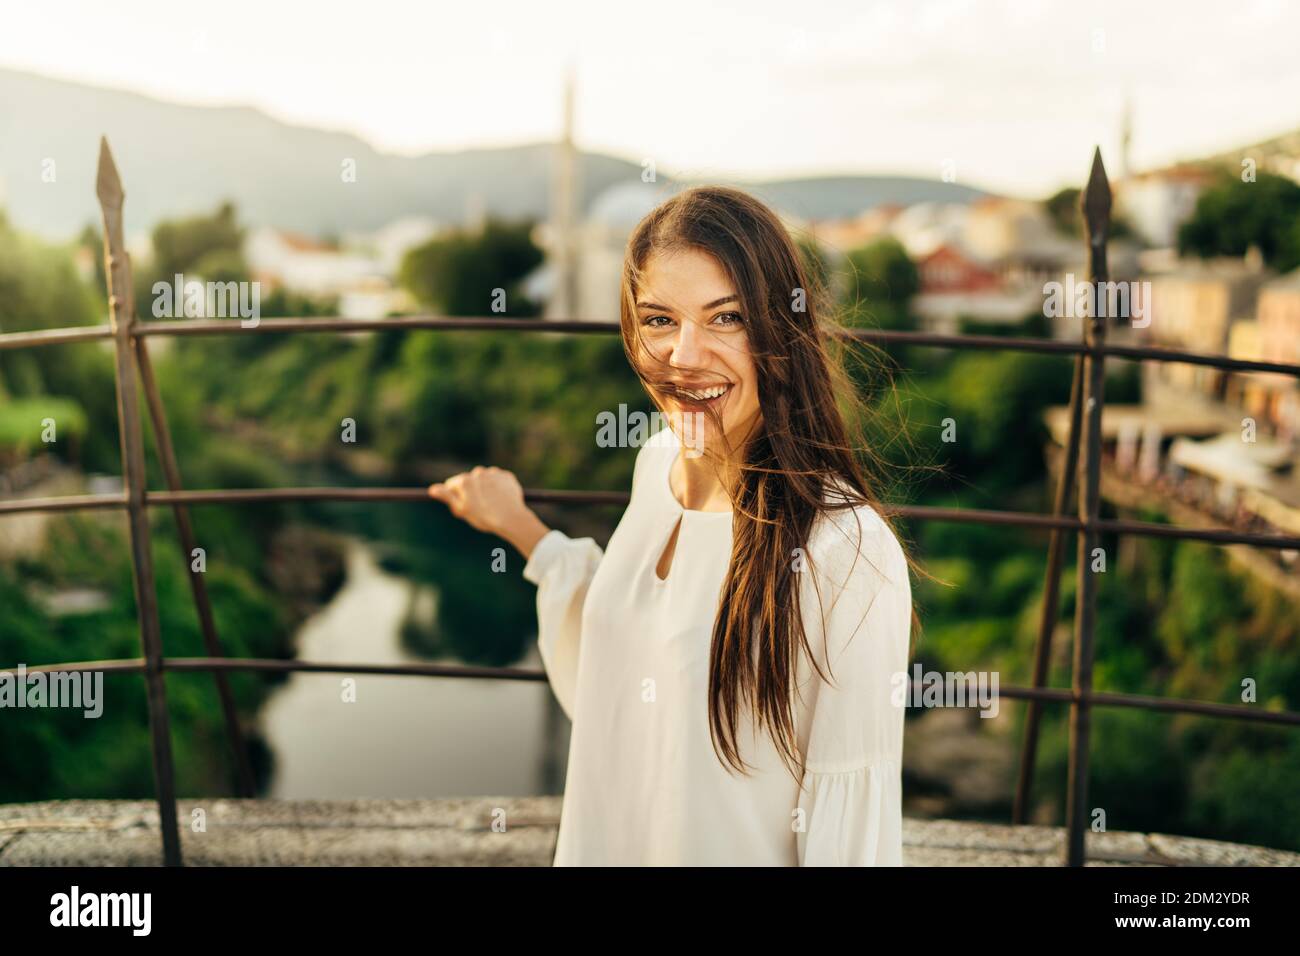 Junge Frau Reisende Besuch beliebten touristischen Destinationen in Südosteuropa, Old Brücke Wahrzeichen in Mostar, Bosnien und Herzegowina.Road trip to Euro Stockfoto